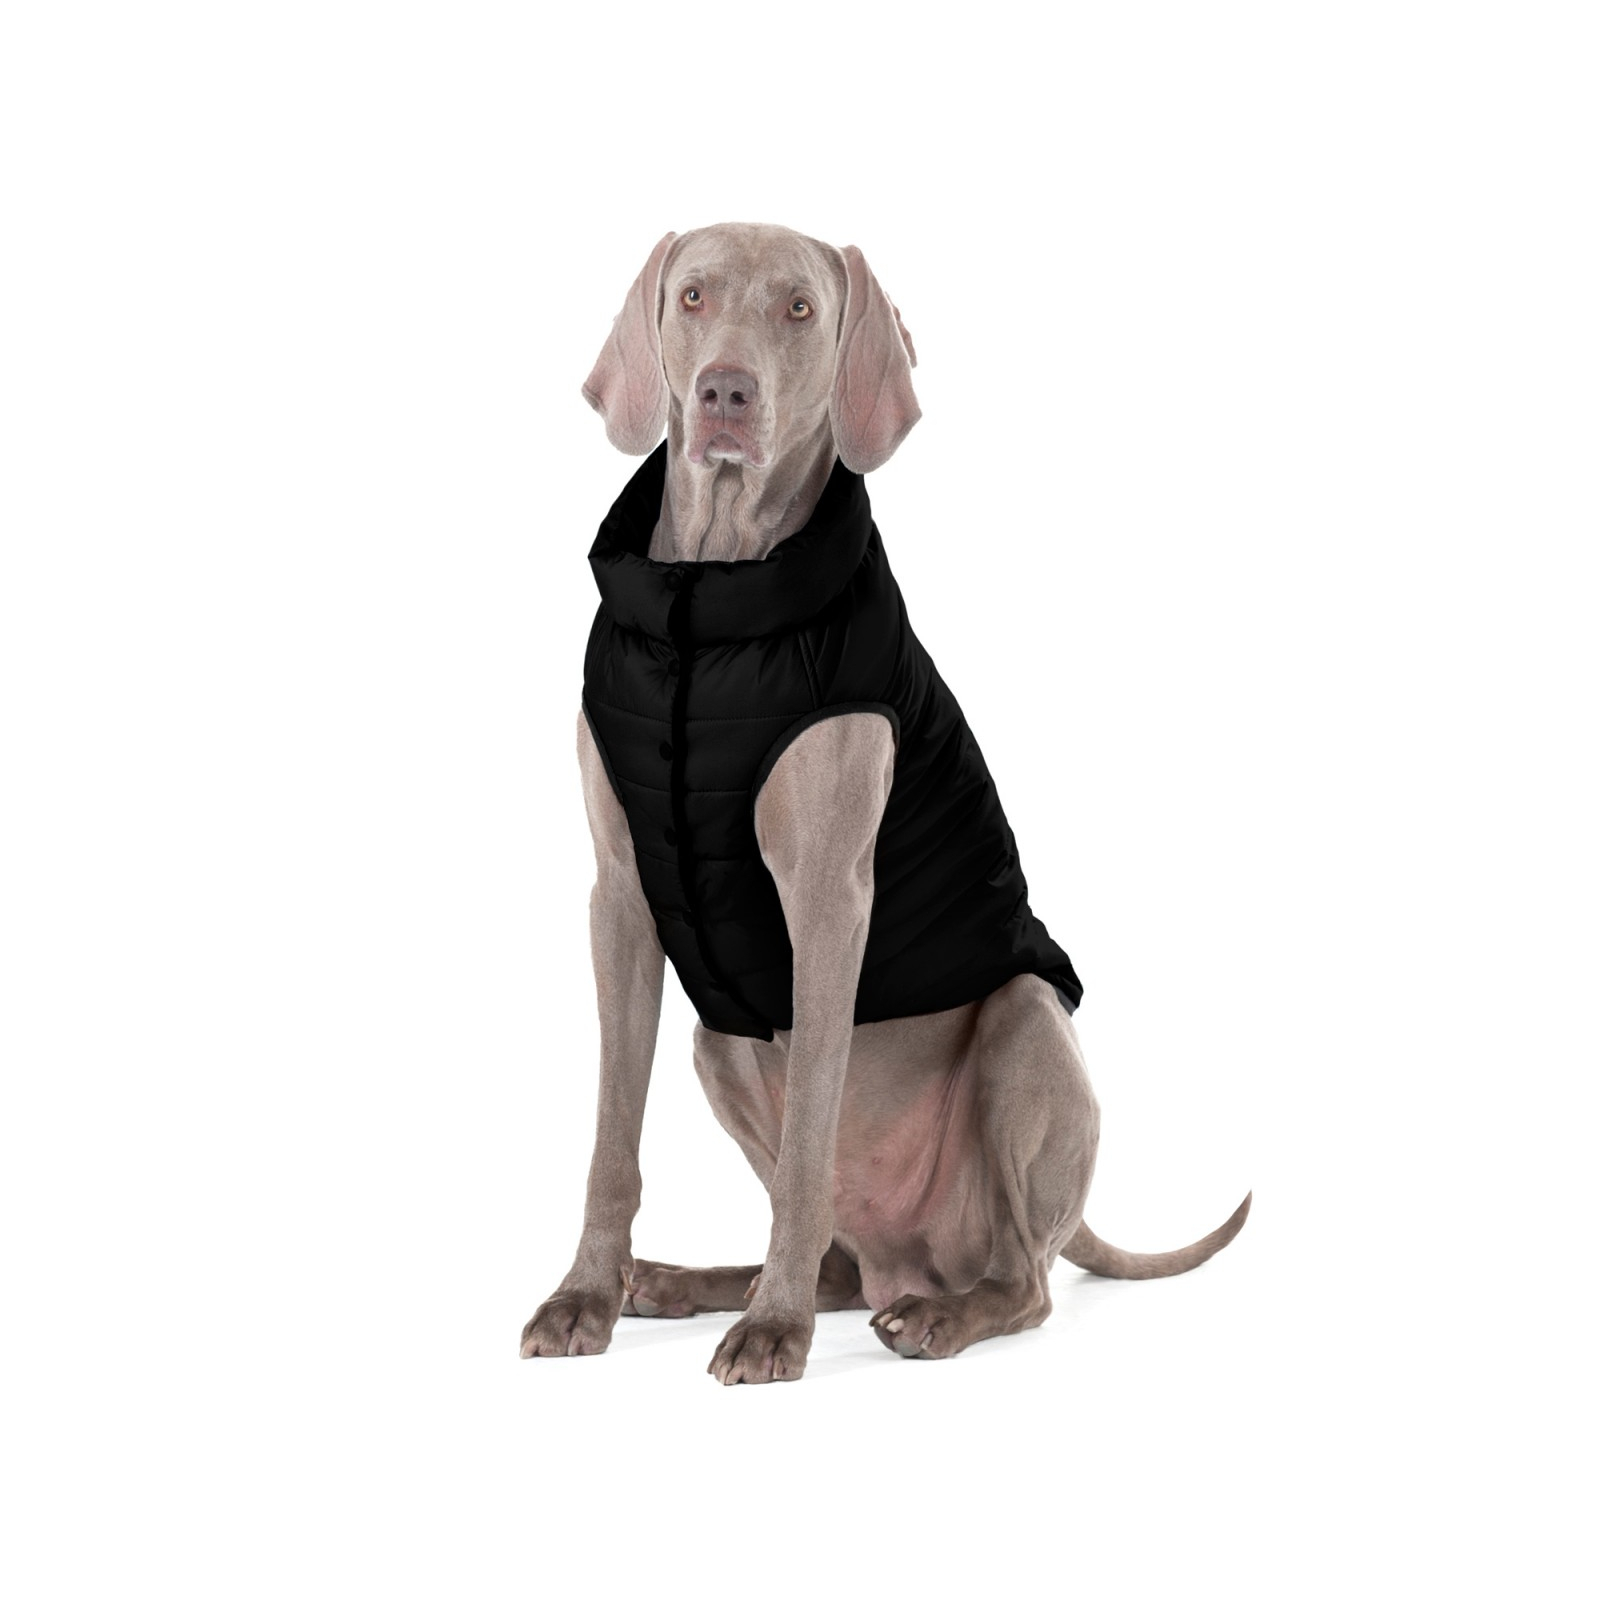 Курточка для животных Airy Vest One S 40 черная (20661) изображение 7